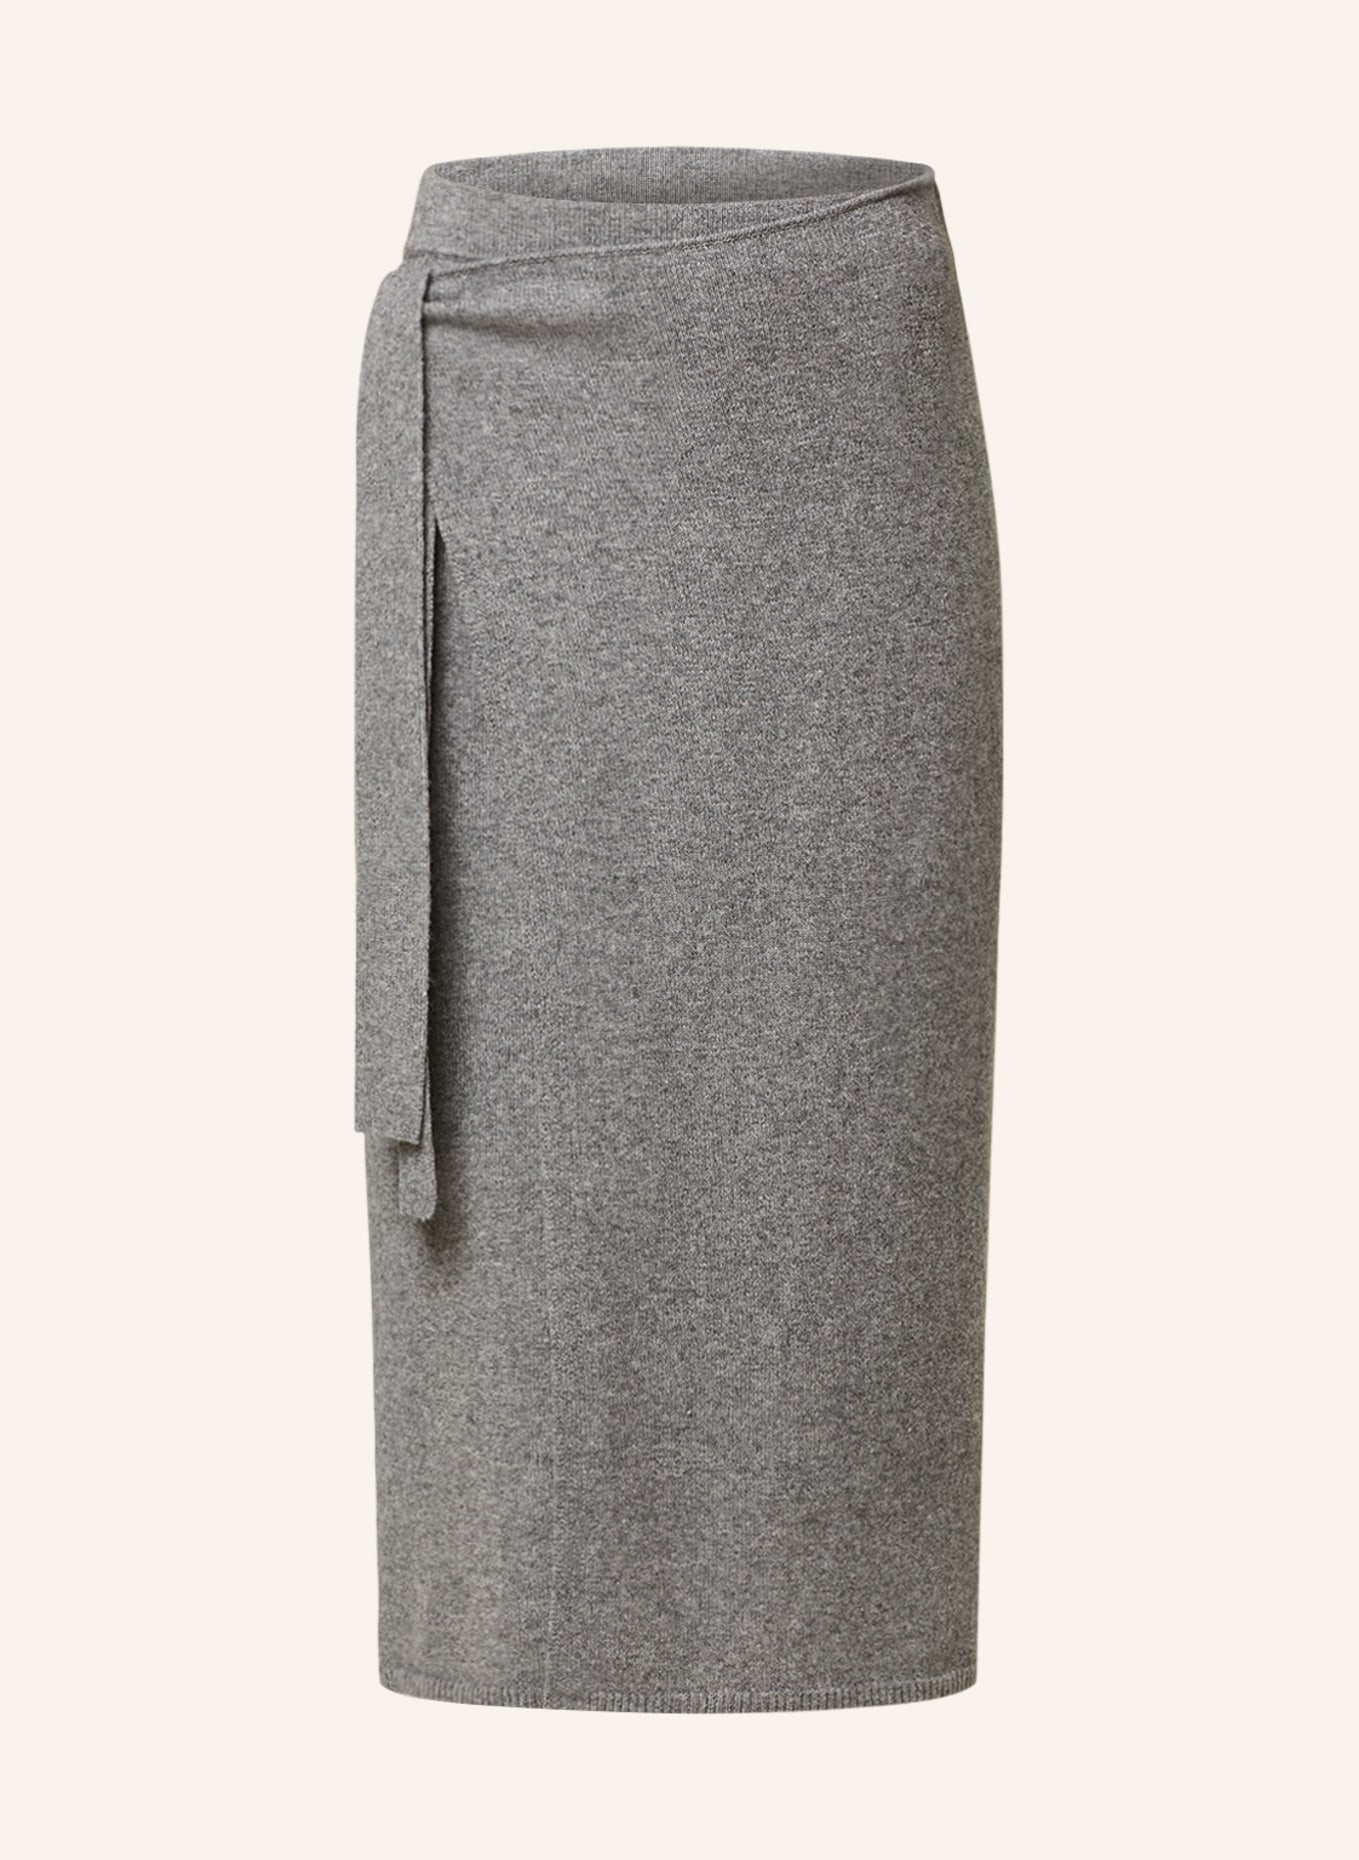 oui Wrap skirt, Color: GRAY (Image 1)